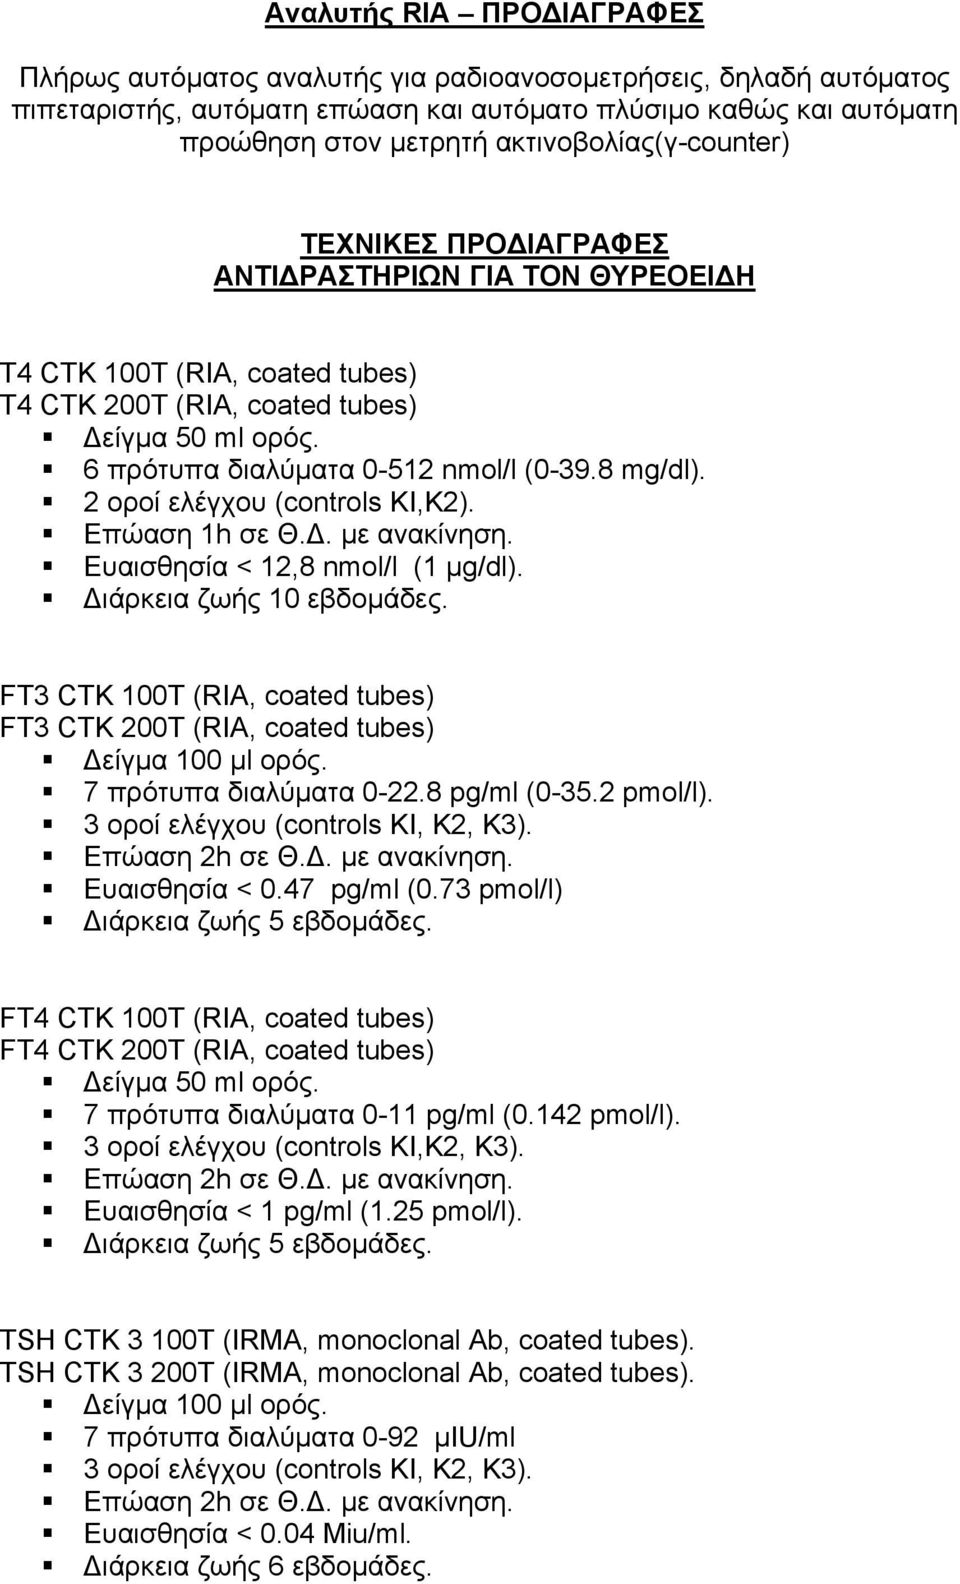 6 πρότυπα διαλύματα 0-512 nmol/l (0-39.8 mg/dl). 2 οροί ελέγχου (controls KI,K2). Επώαση 1h σε Θ.Δ. με ανακίνηση. Ευαισθησία < 12,8 nmol/l (1 μg/dl). Διάρκεια ζωής 10 εβδομάδες.